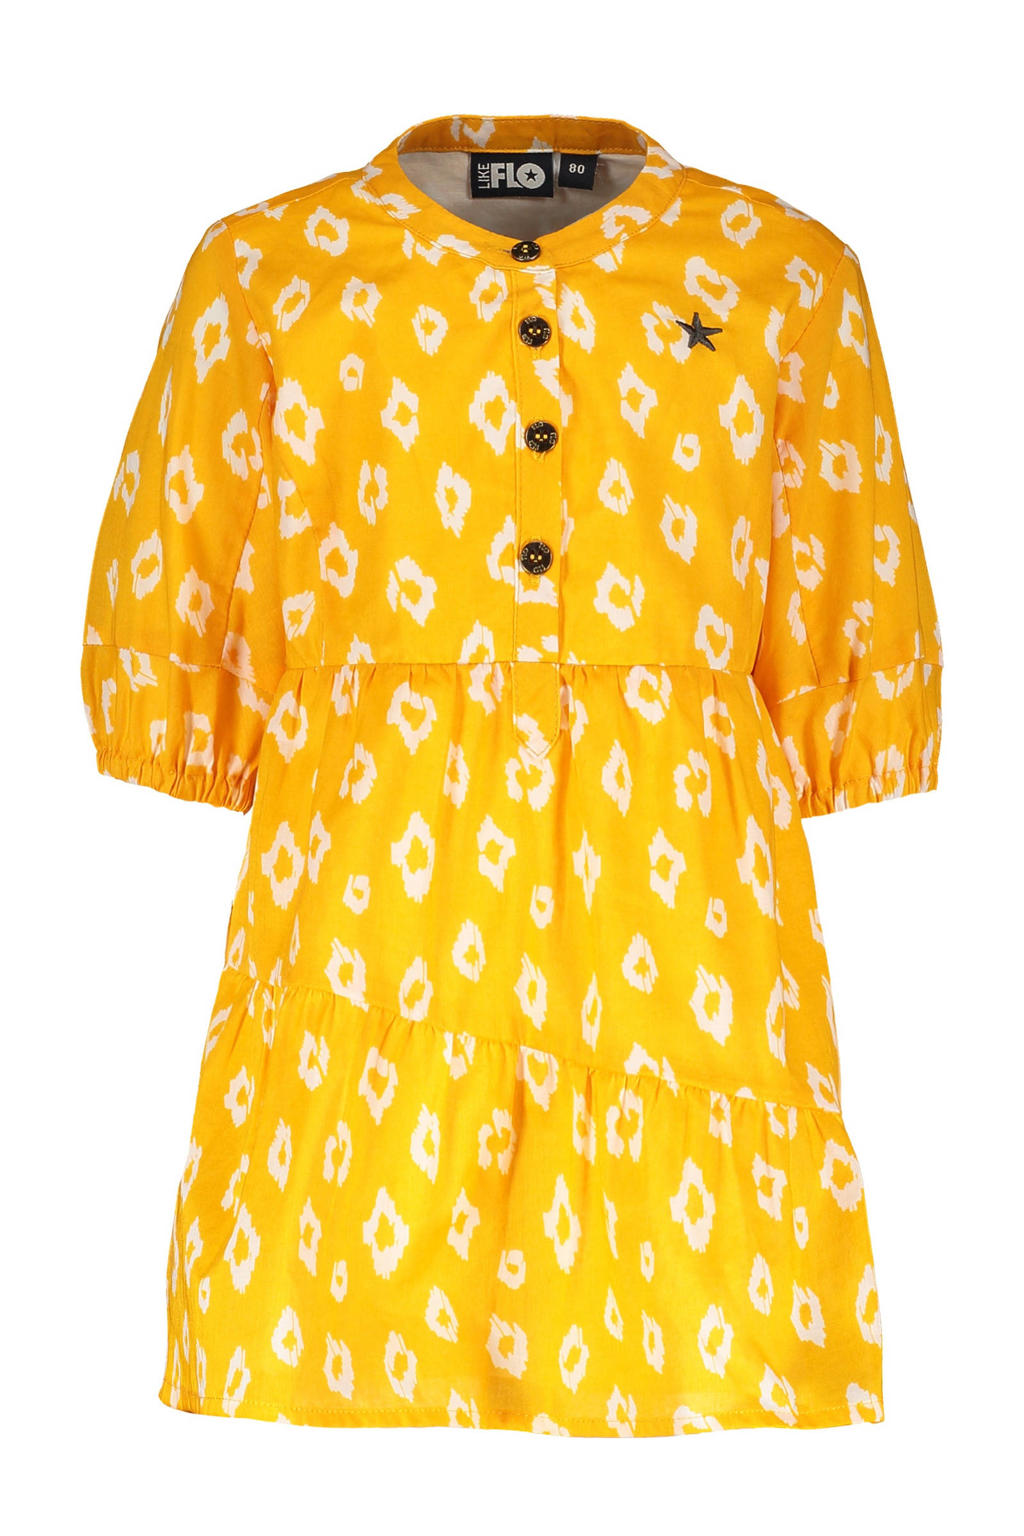 Like Flo A-lijn jurk met all over print zonnebloem geel/wit